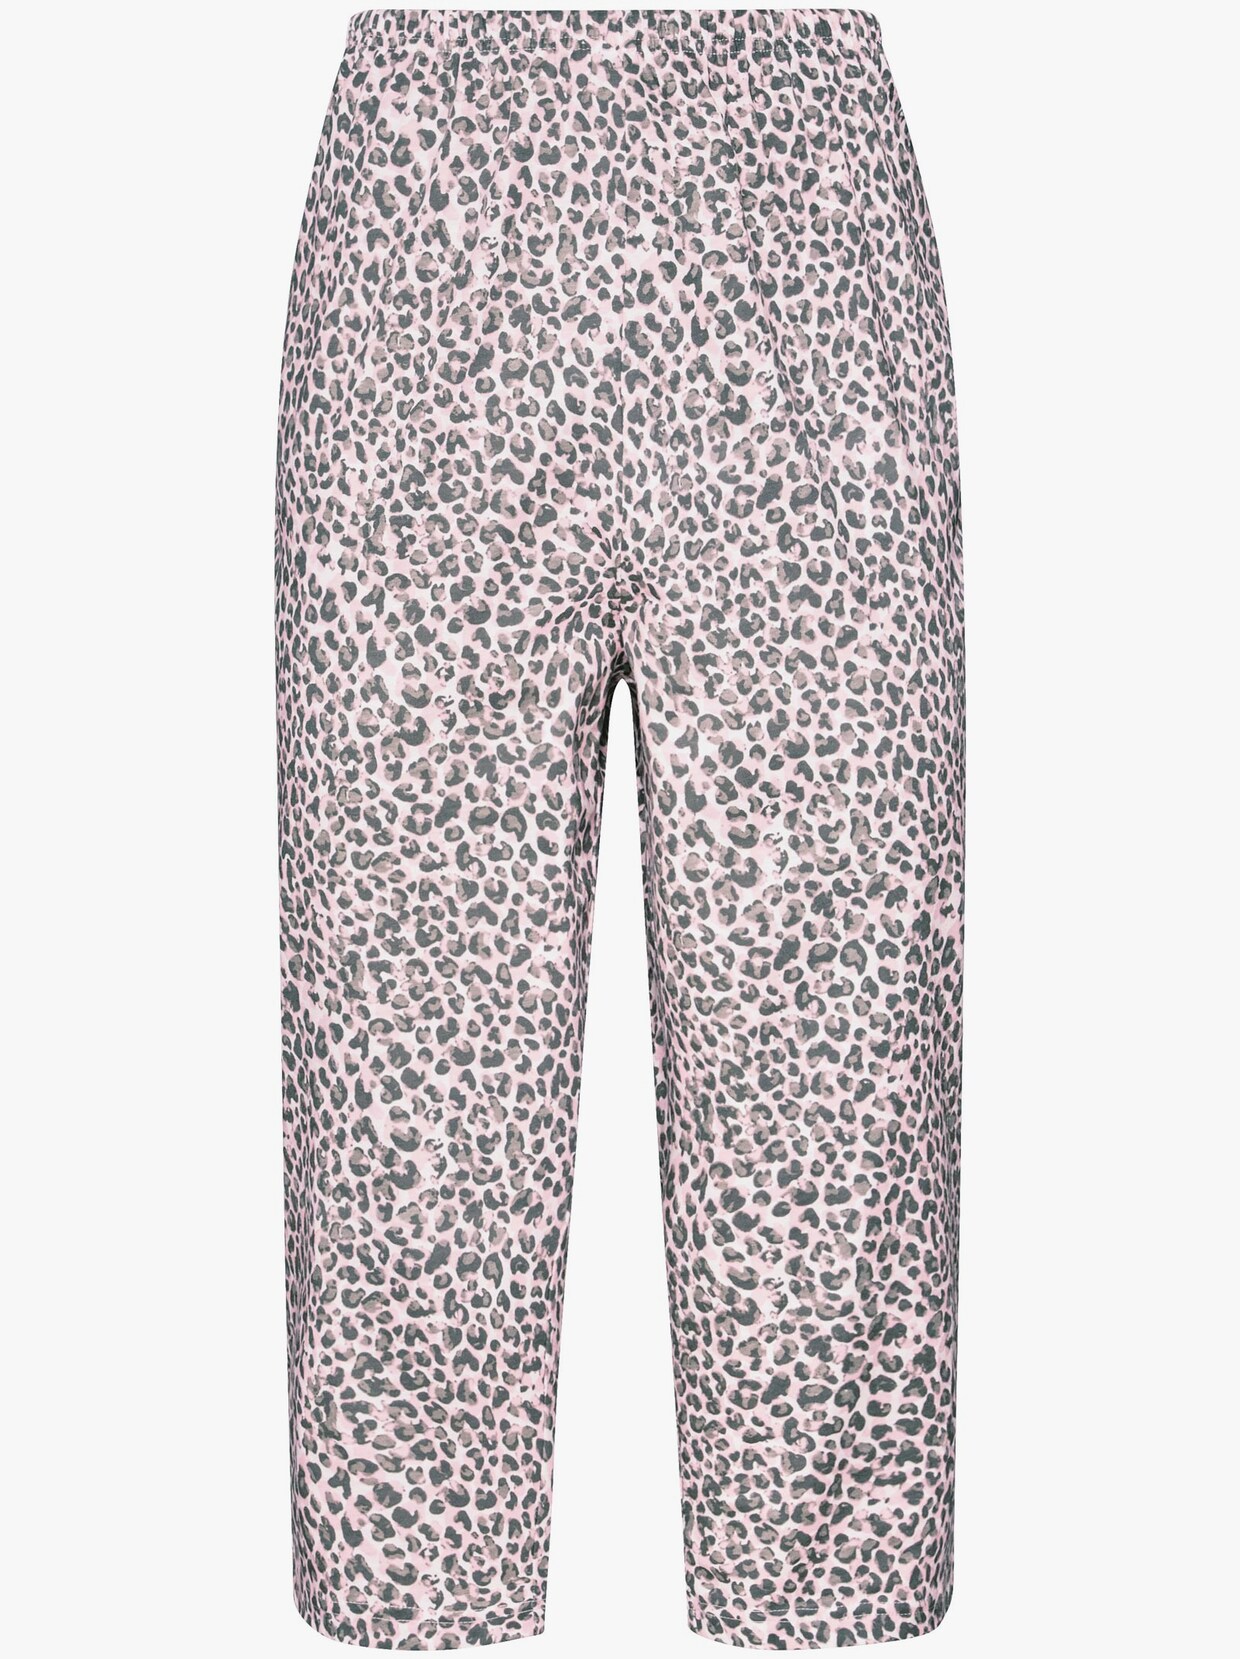 Pyjamas med capribyxa - ljusrosa-grå, tryckt